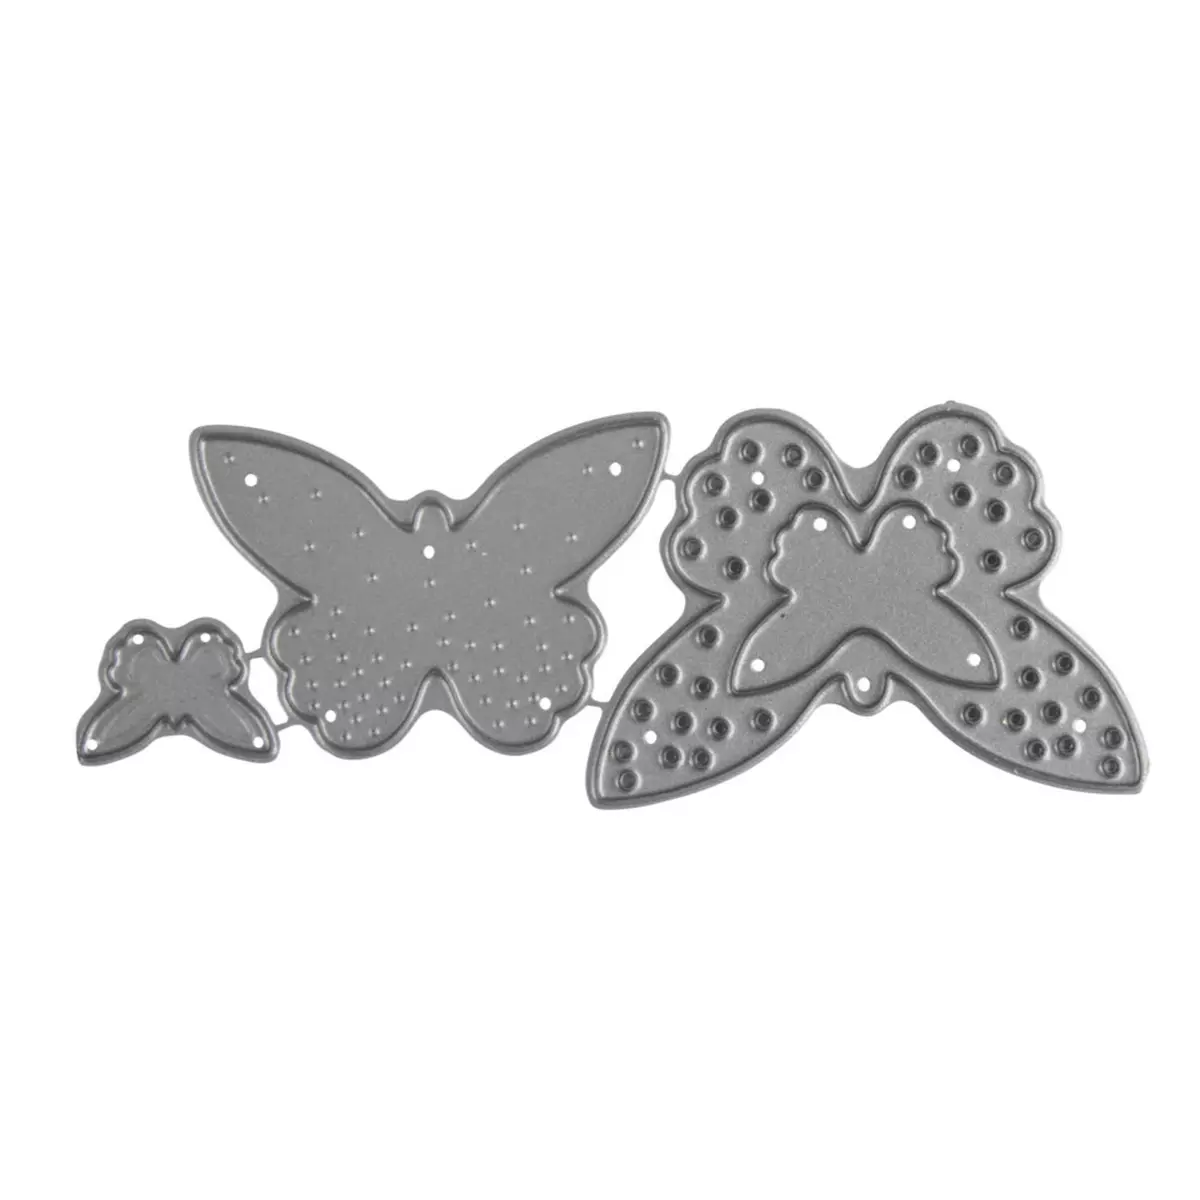 Rayher Pochoirs à découper Kit: Papillons, 1,2 - 3,4cm x 1,3 - 5cm, 3 pces